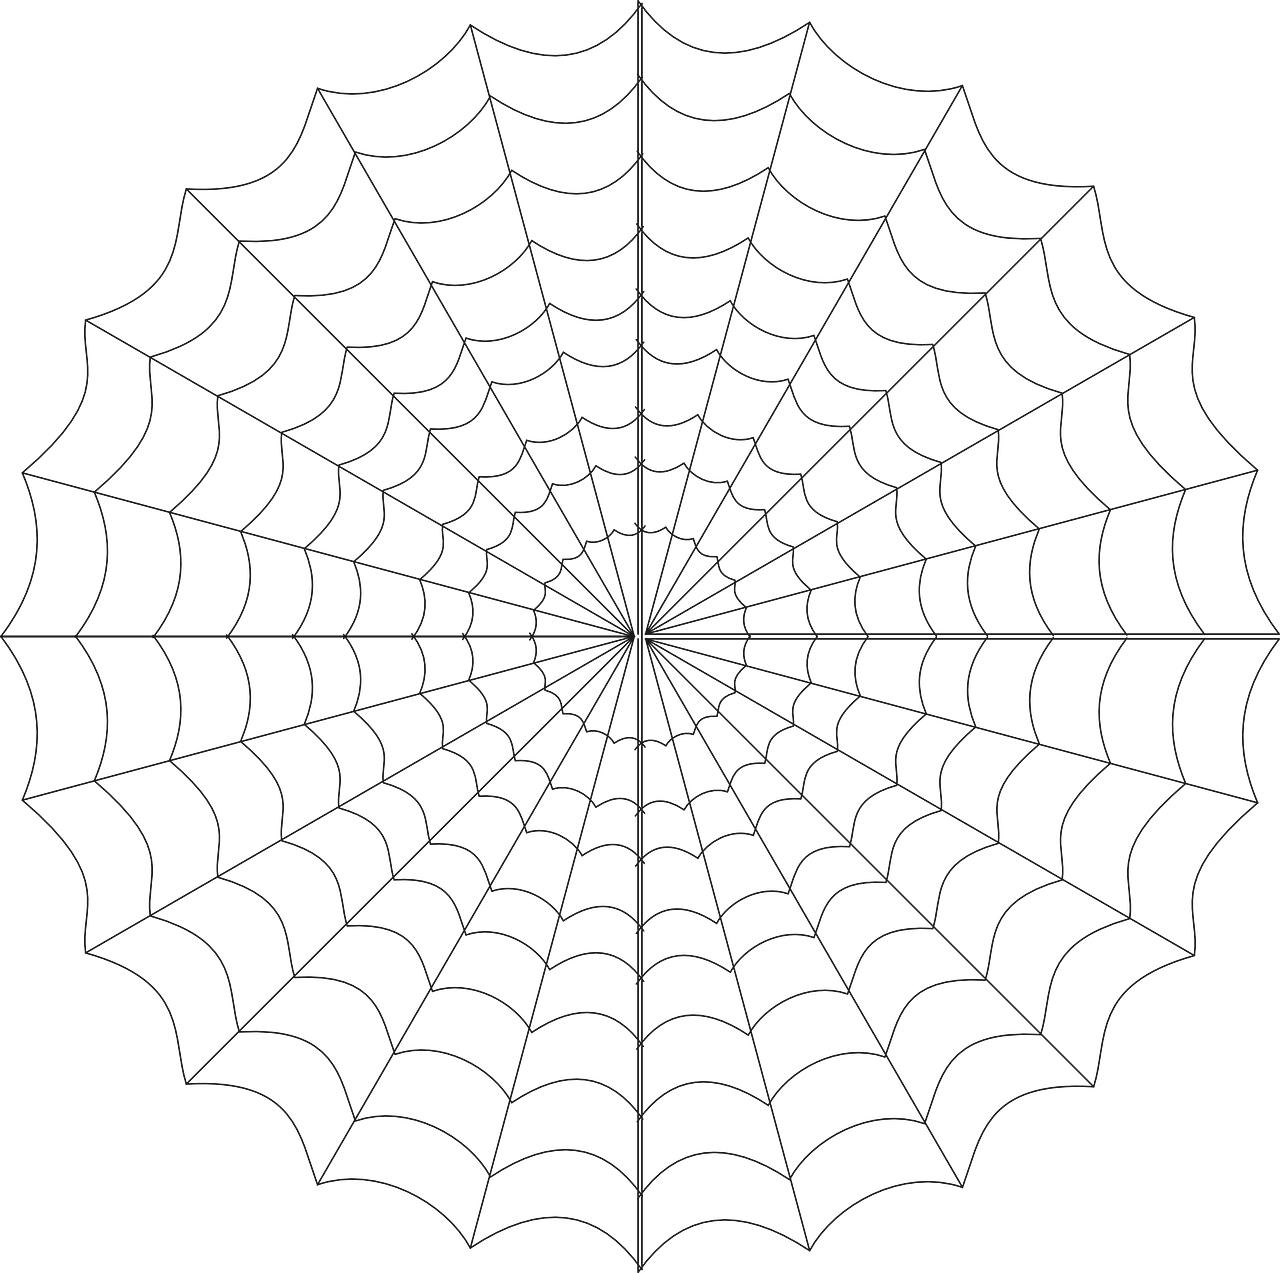 Symmetrical Spider Web Illustration PNG